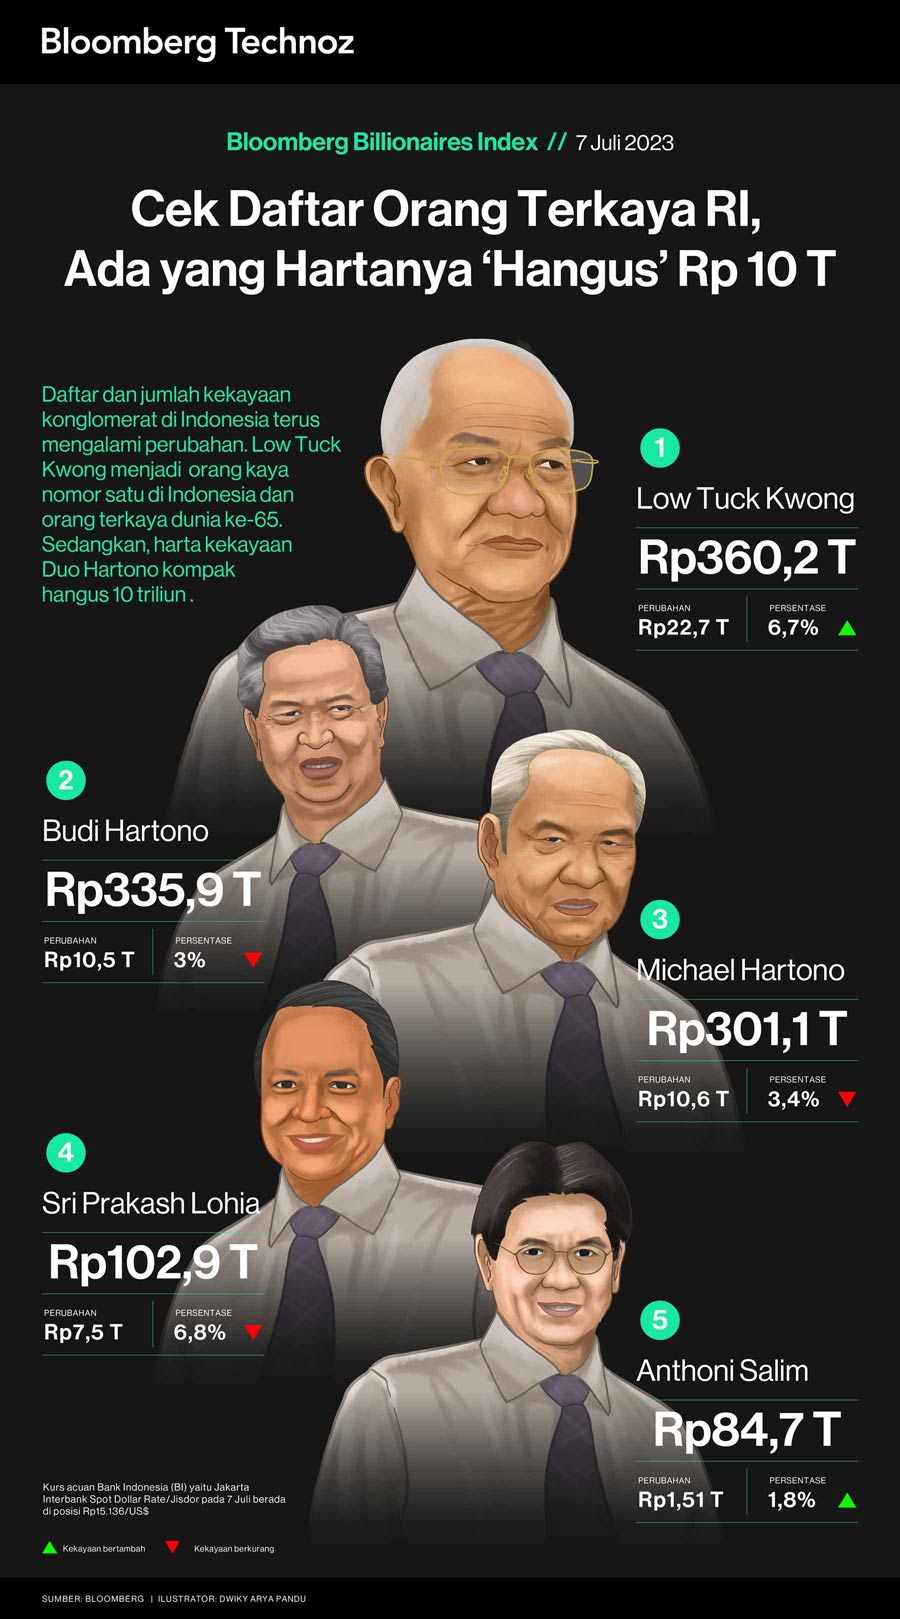 Cek Daftar Orang Terkaya RI, Ada yang Hartanya 'Hangus' Rp 10 T (Infografis/Bloomberg Technoz)